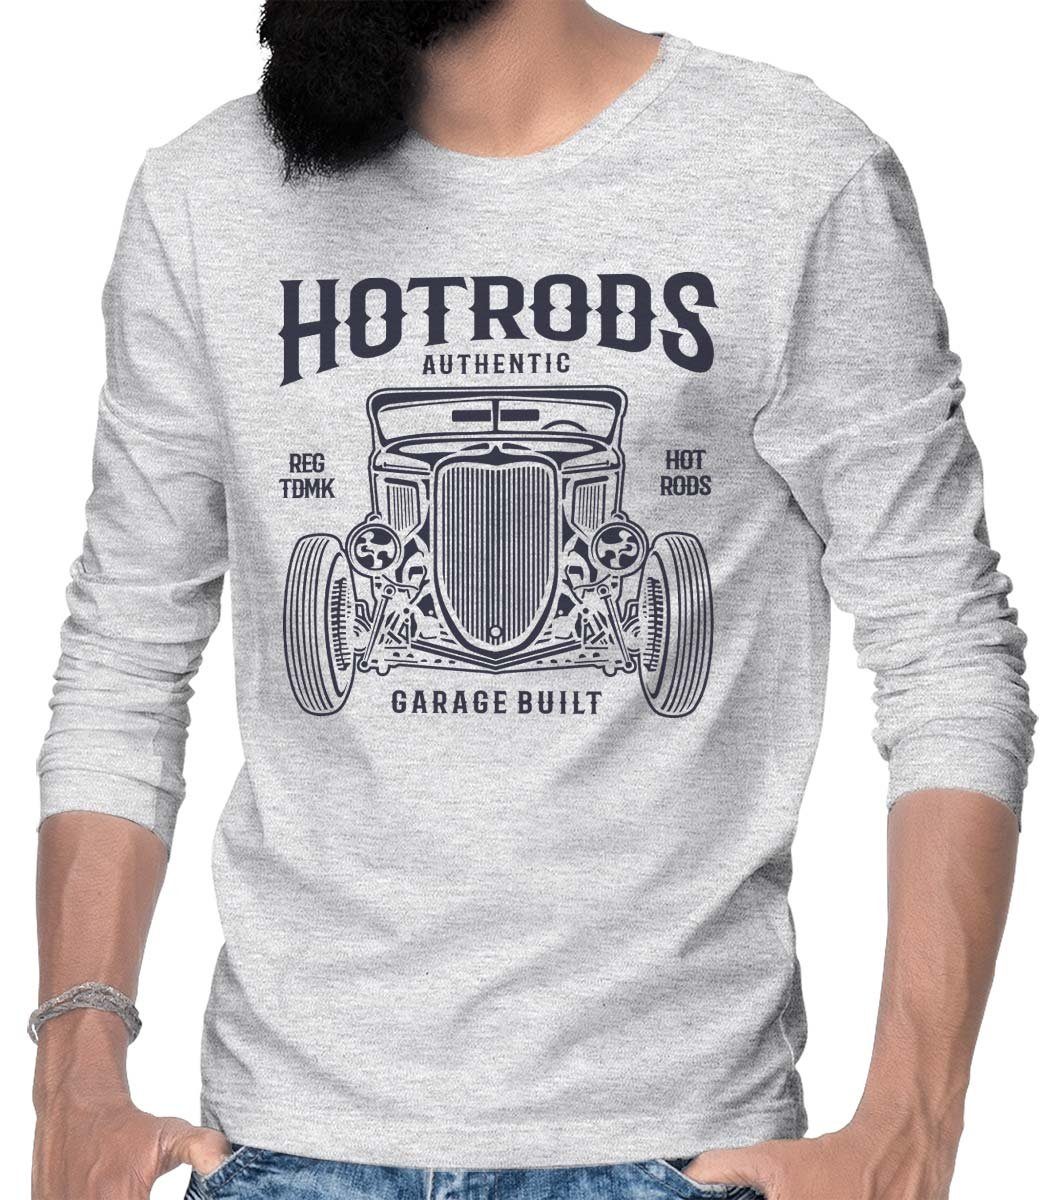 On Motiv mit US-Car Rebel HerrenLangarm Melange T-Shirt Hotrods / Longsleeve Hotrod Tee Grau Longsleeve Wheels